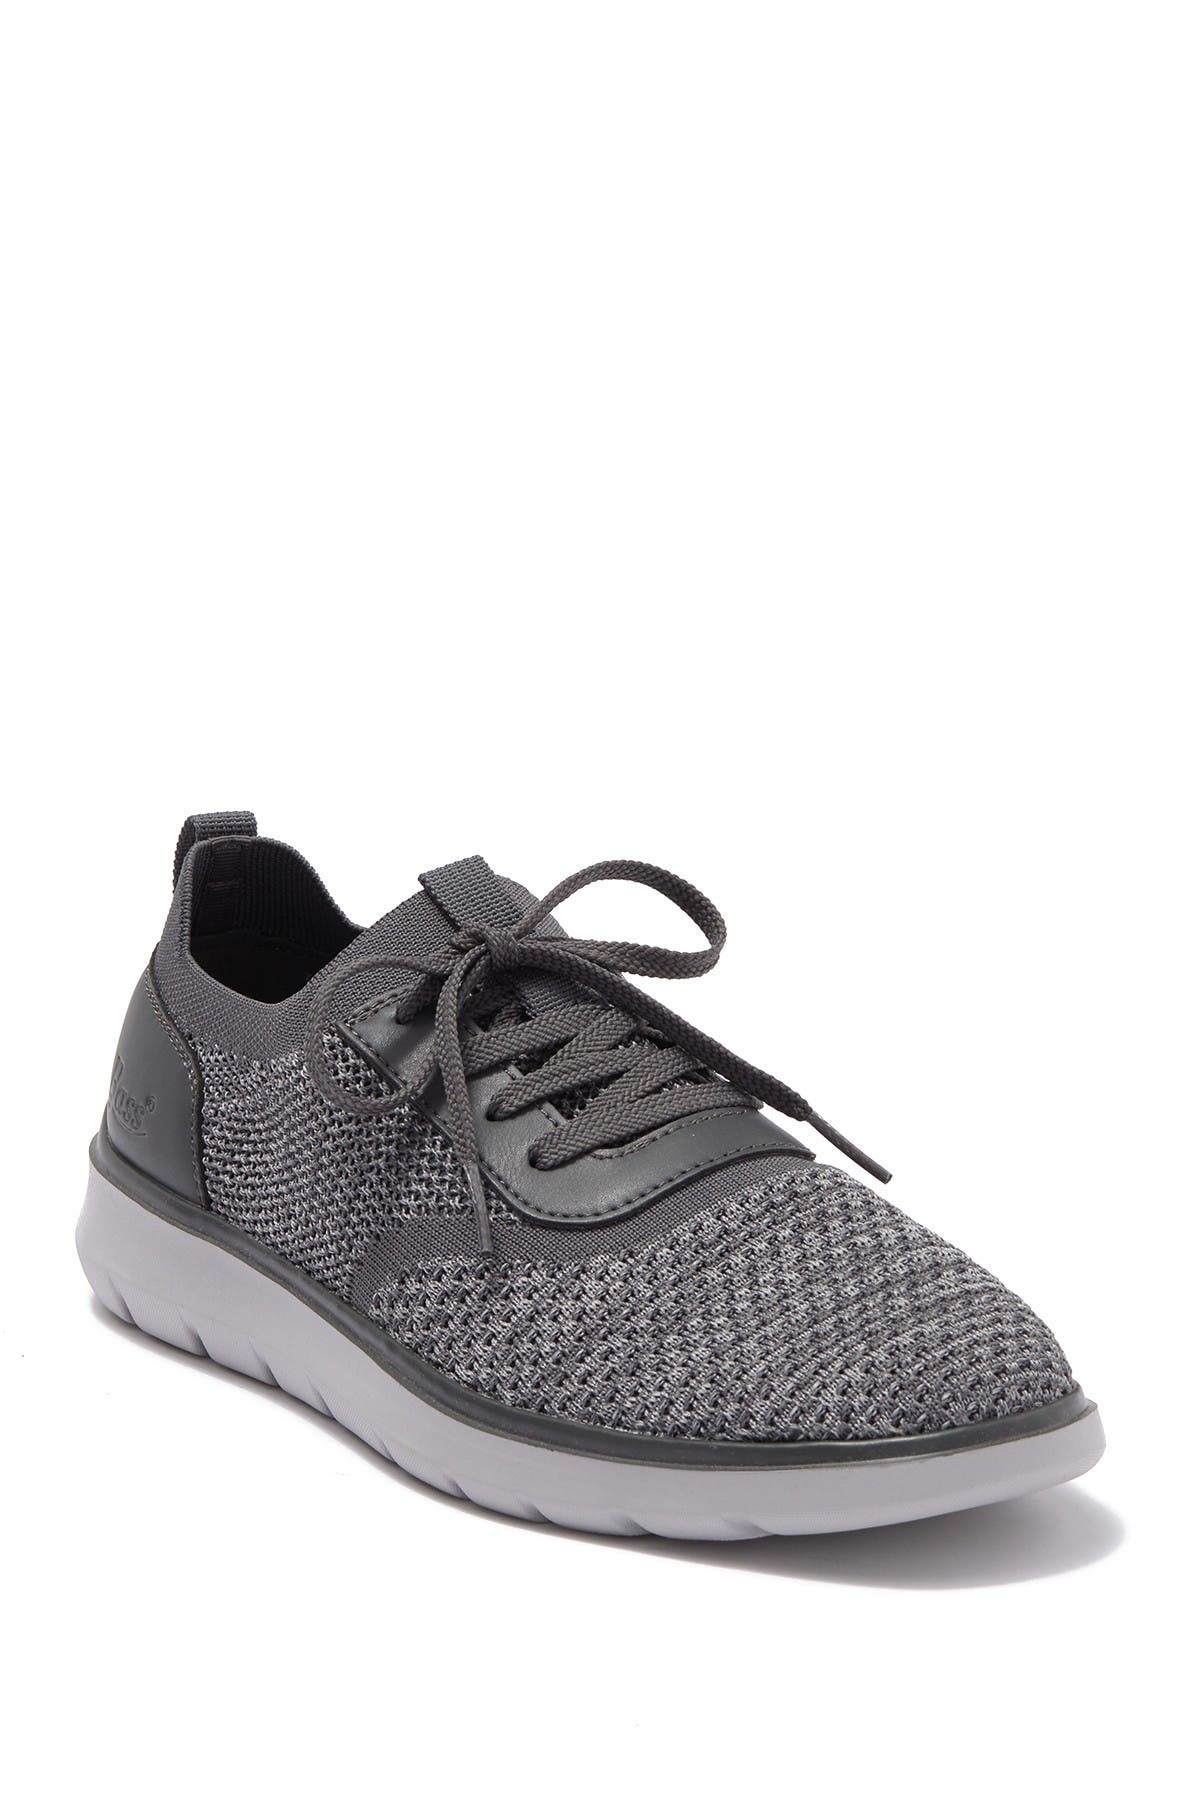 G.h. Bass & Co Bryson 2 Sneaker In Grey